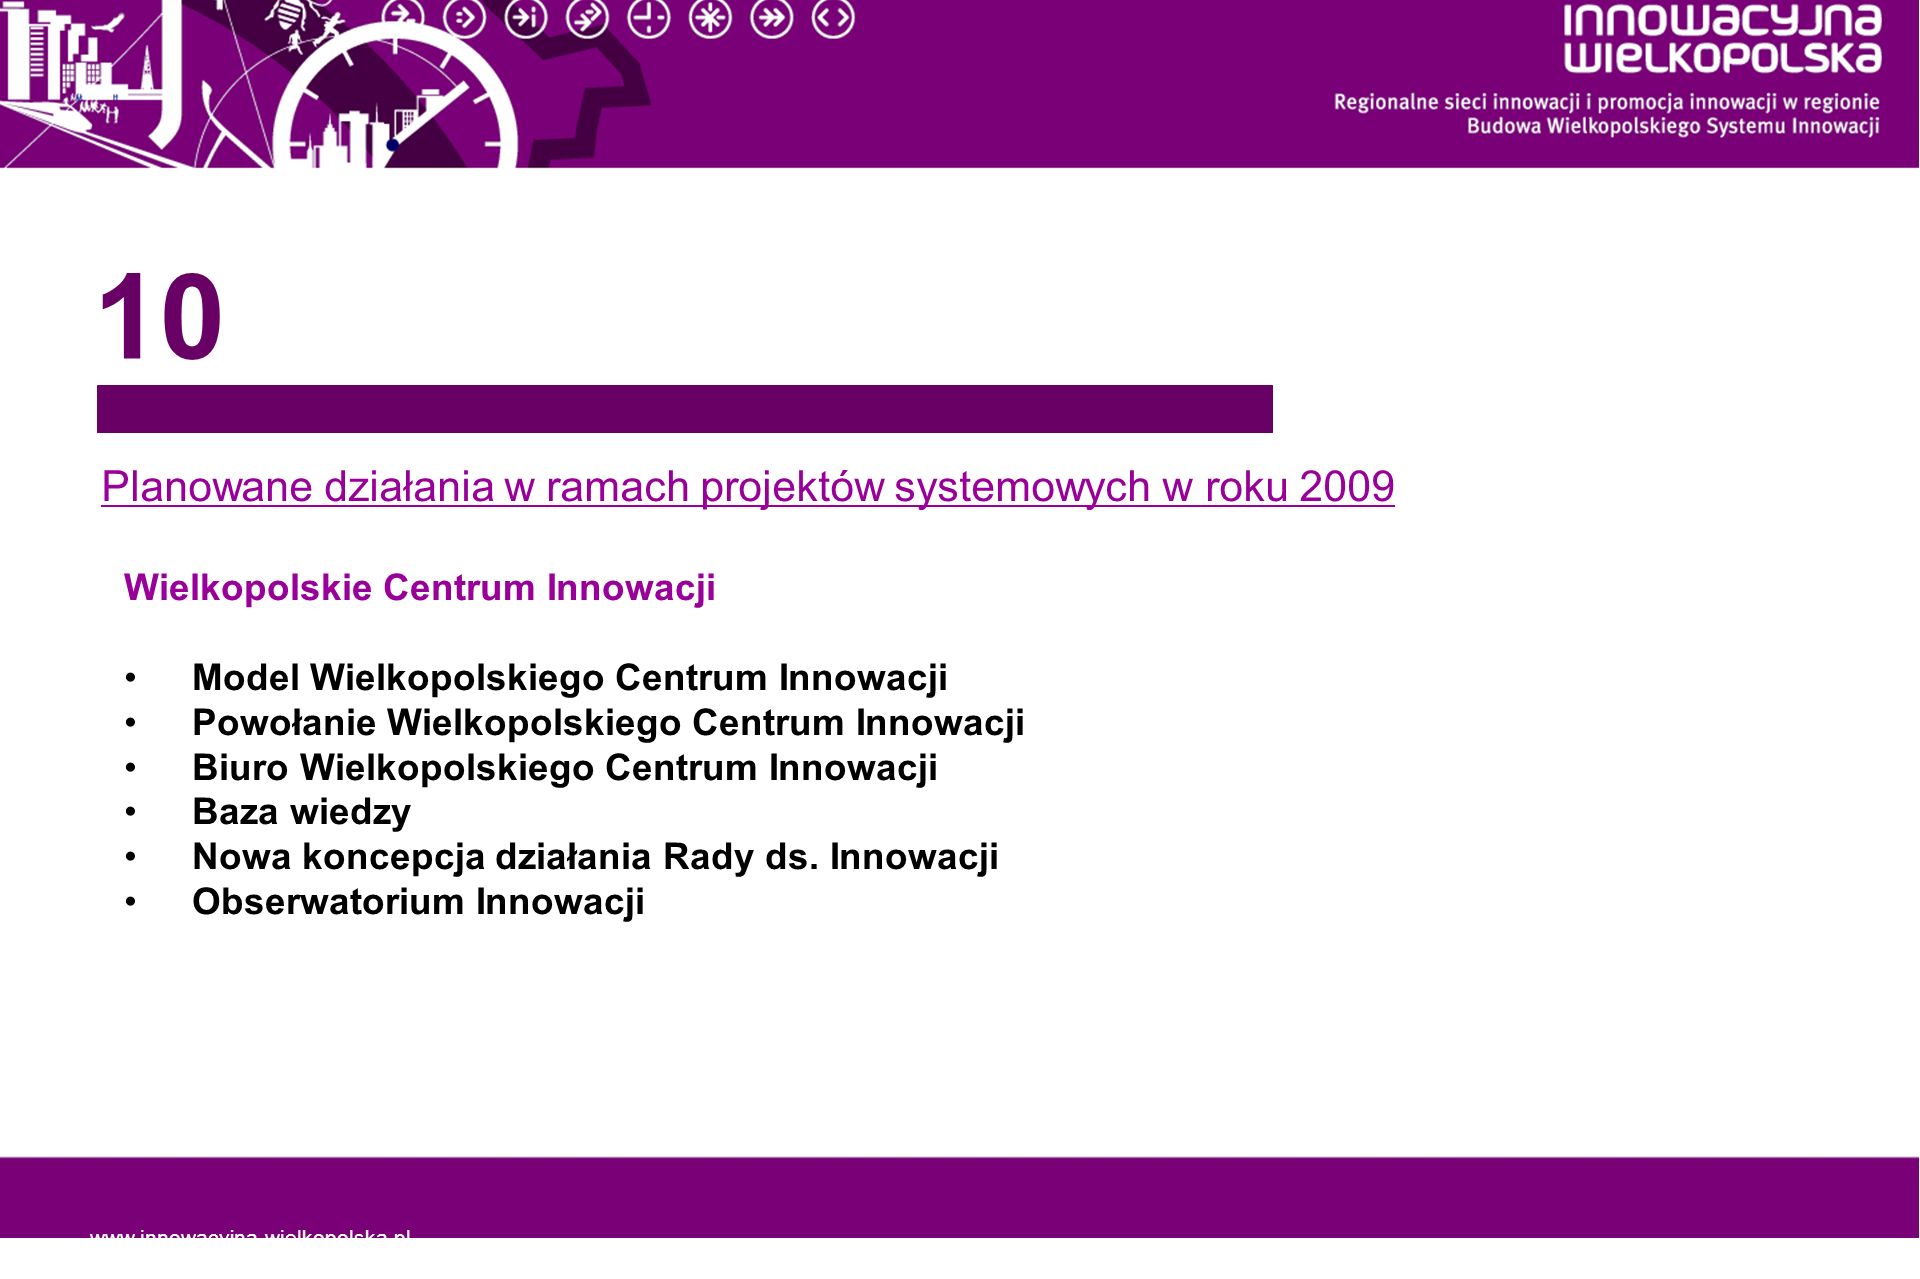 Planowane działania w ramach projektów systemowych w roku 2009